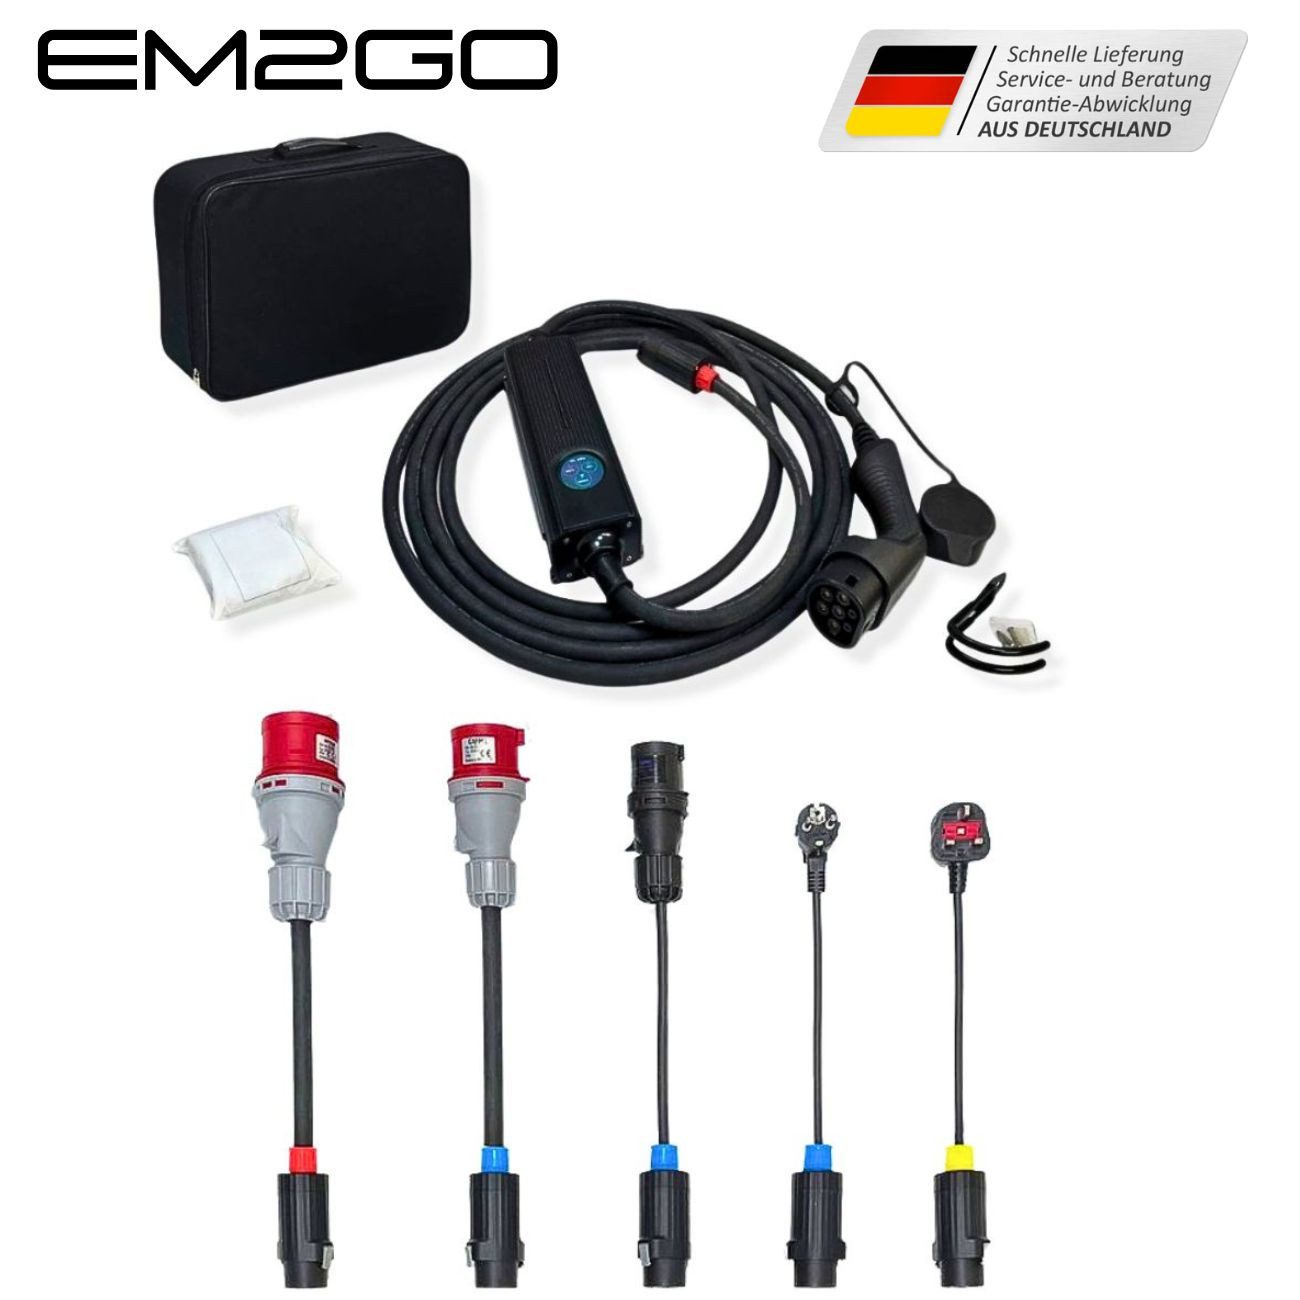 EM2GO Mobil, Mobile Elektroauto-Ladestation Mobile Wallbox mit 5 Adapter, Wandhalterung und Tasche